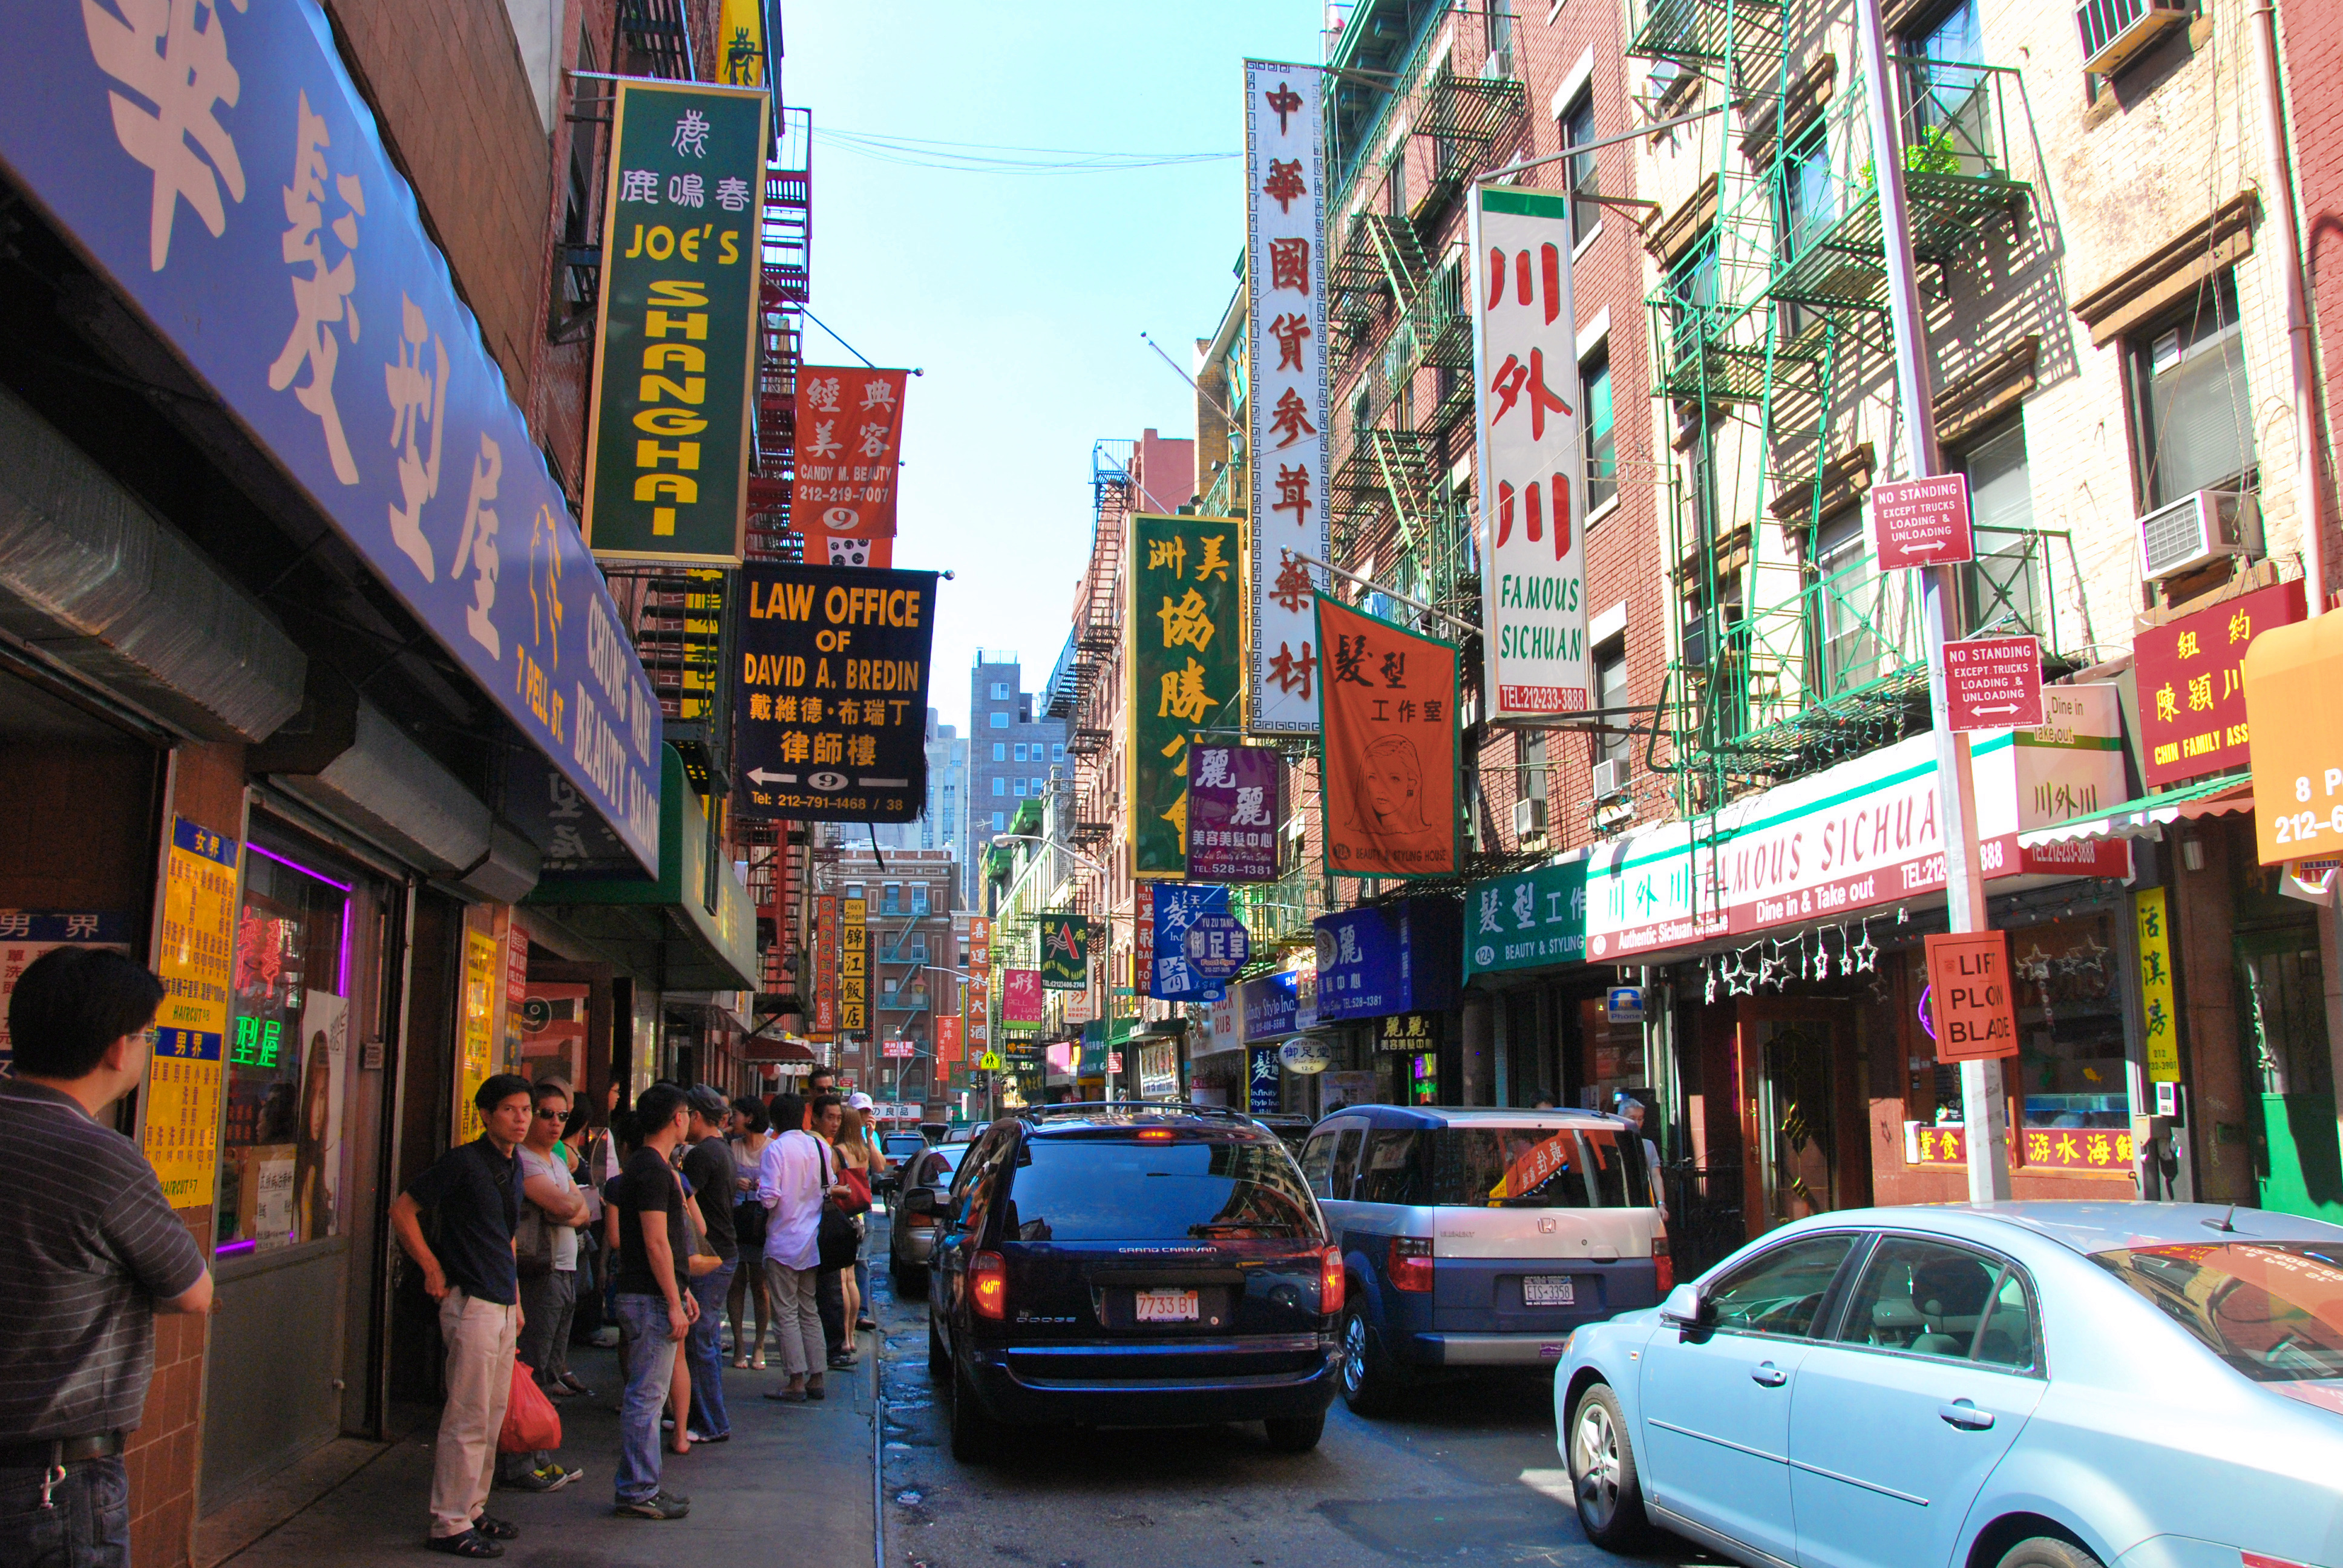 File:Chinatown manhattan 2009.JPG - Wikimedia Commons